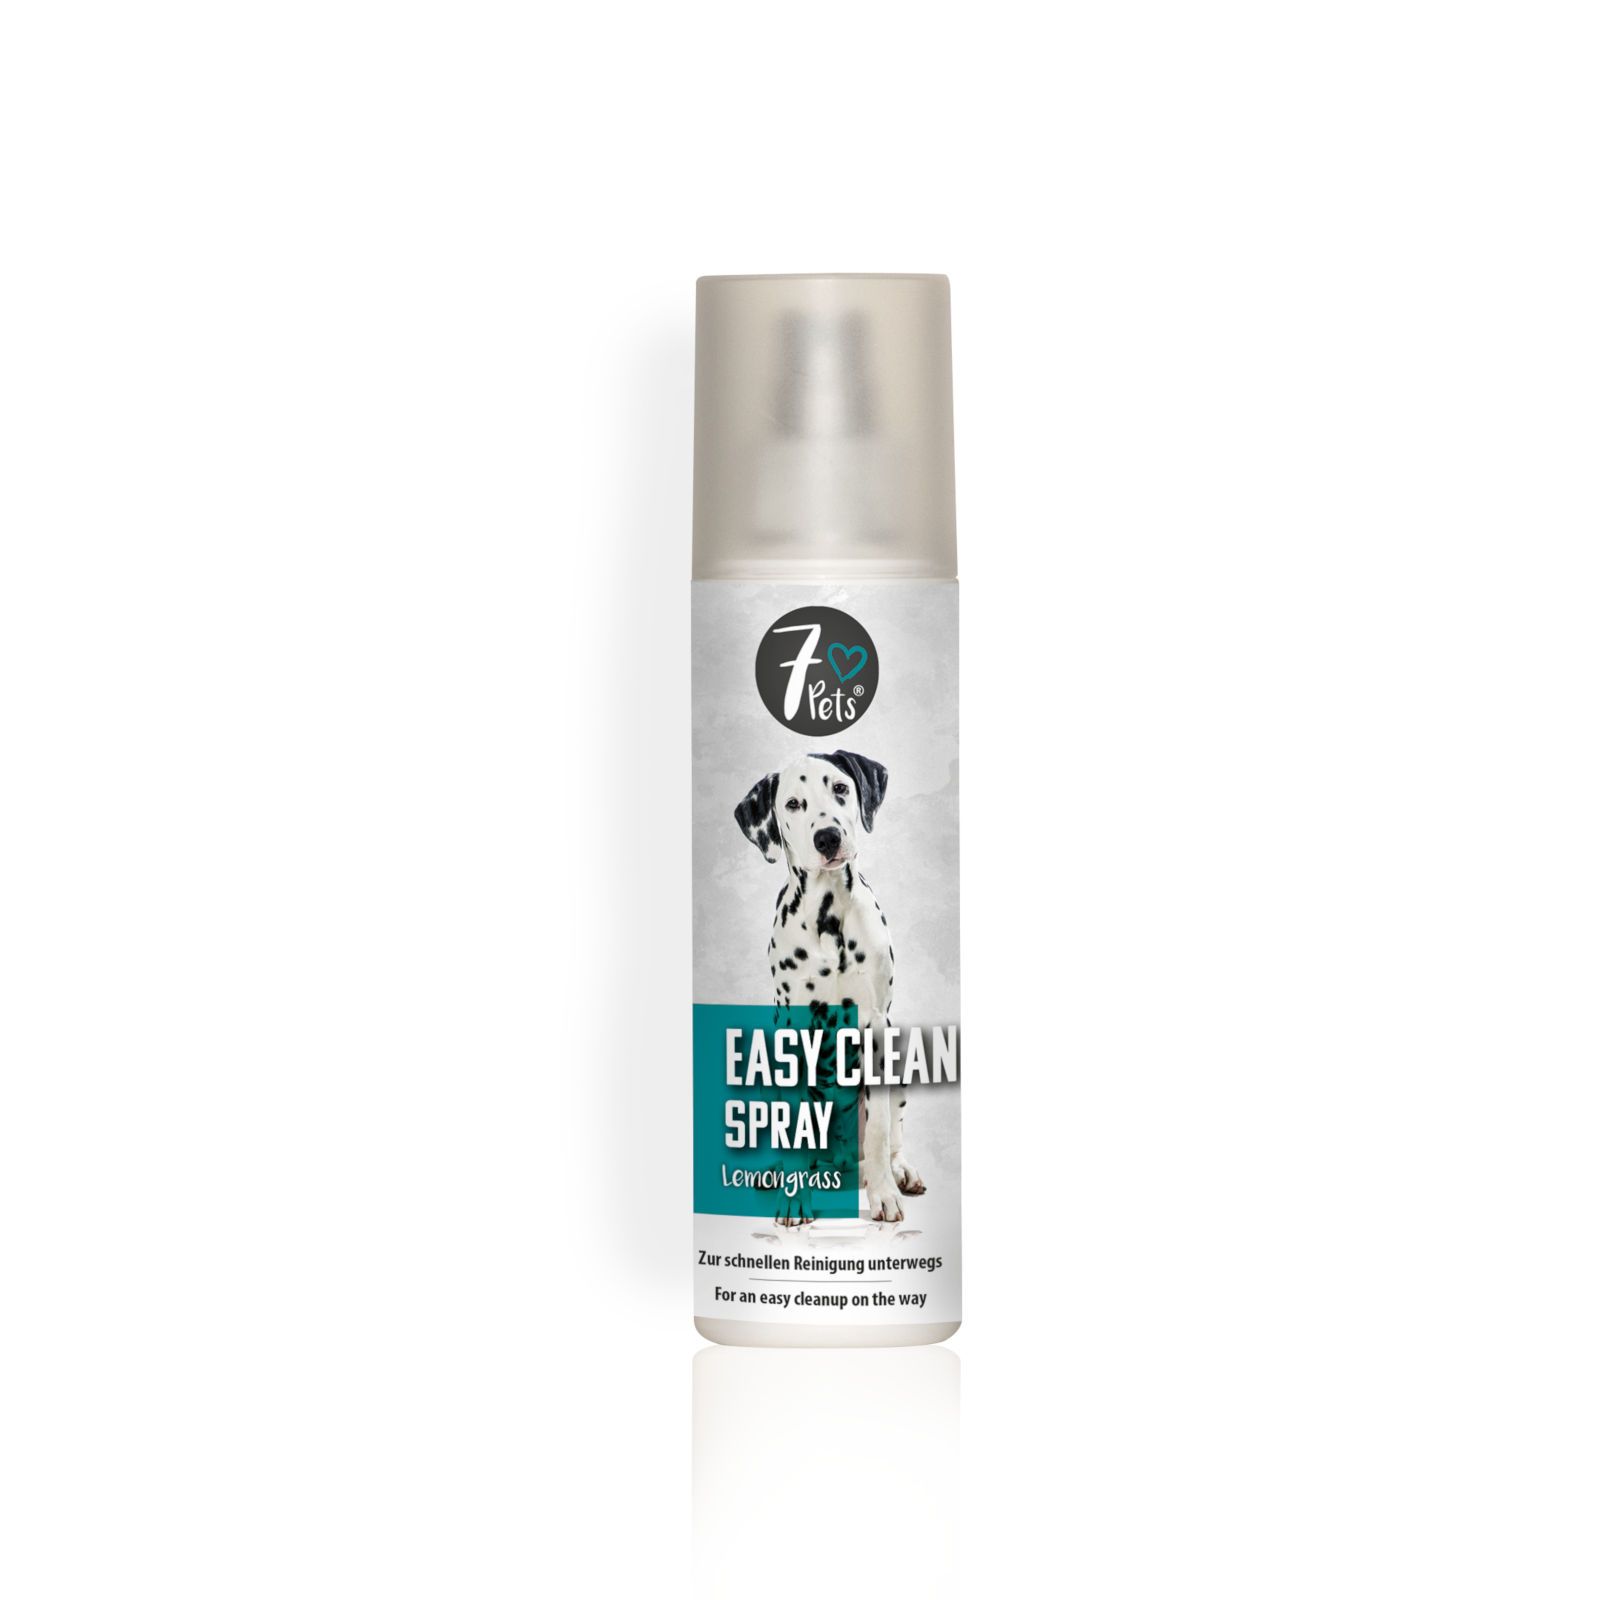 7Pets Easy Clean Spray zur Hunde-Reinigung unterwegs